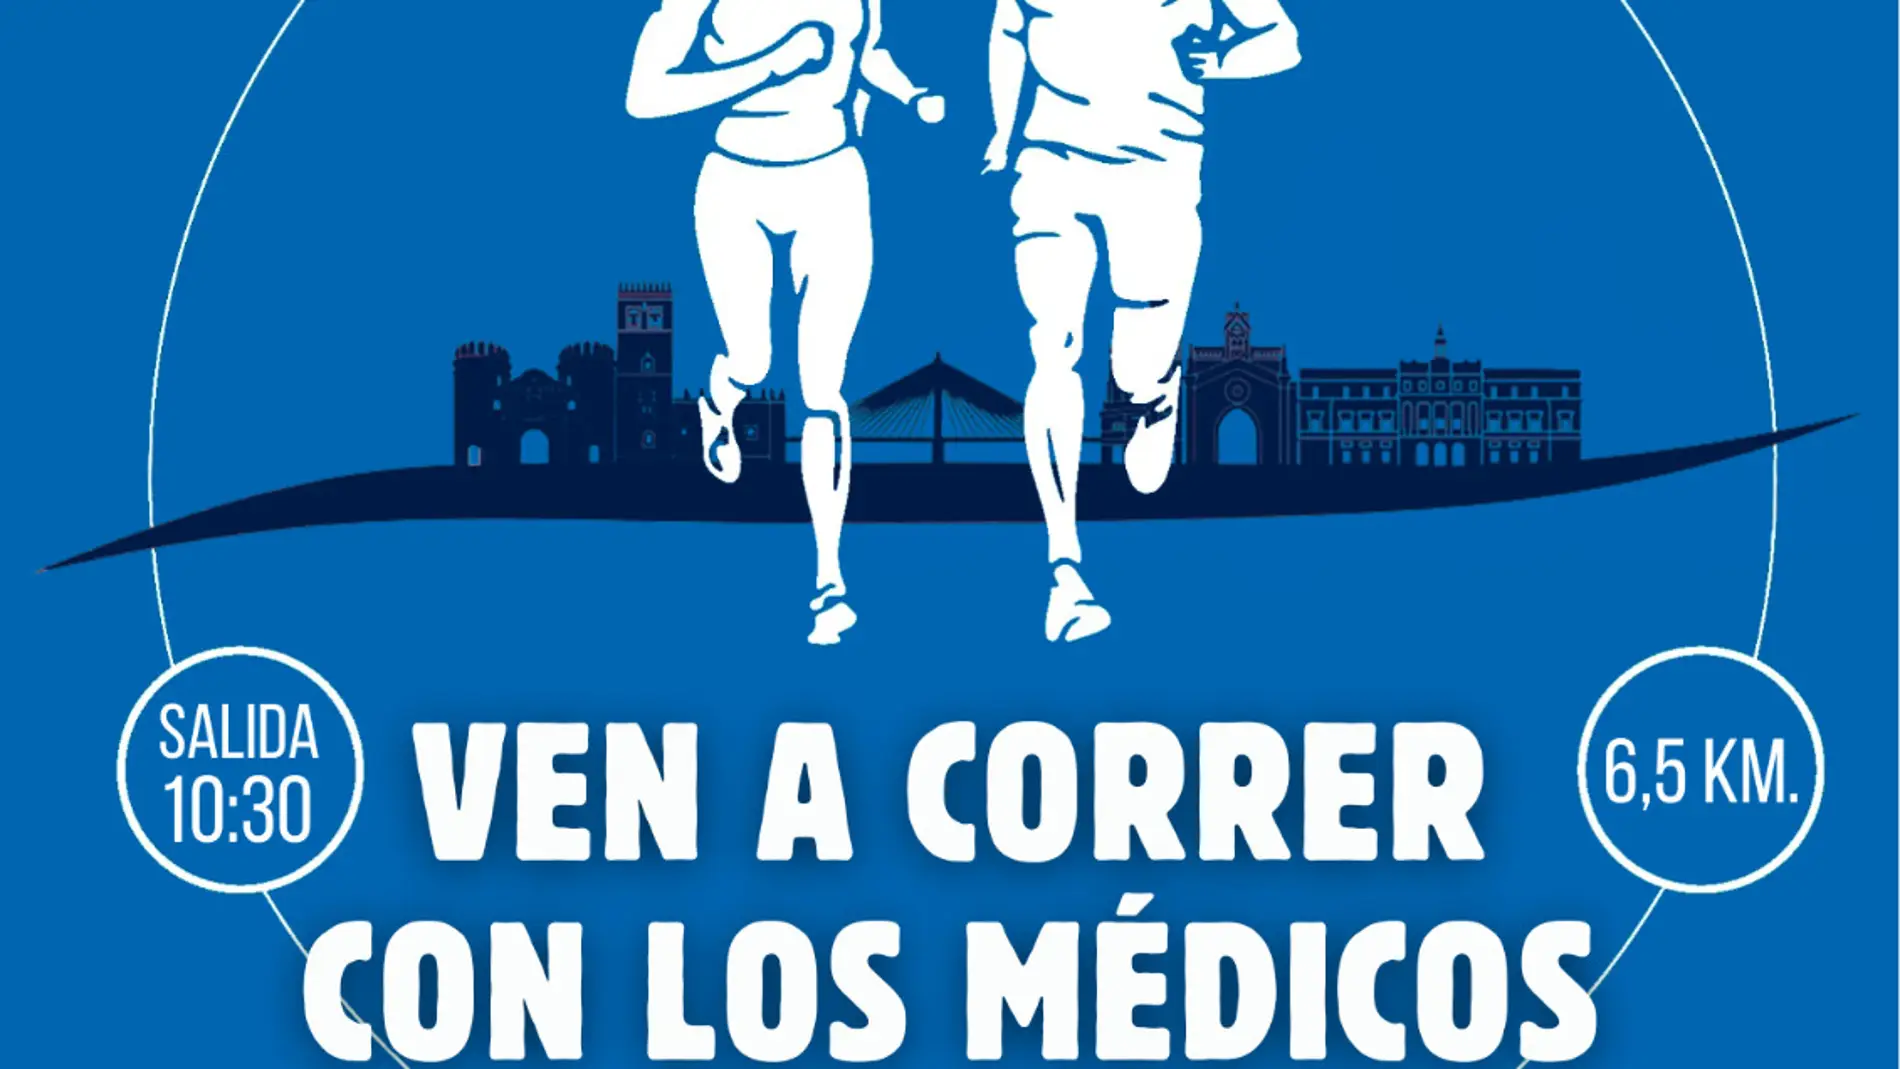 El Colegio de Médicos de Badajoz propone este sábado un encuentro deportivo entre médicos y pacientes